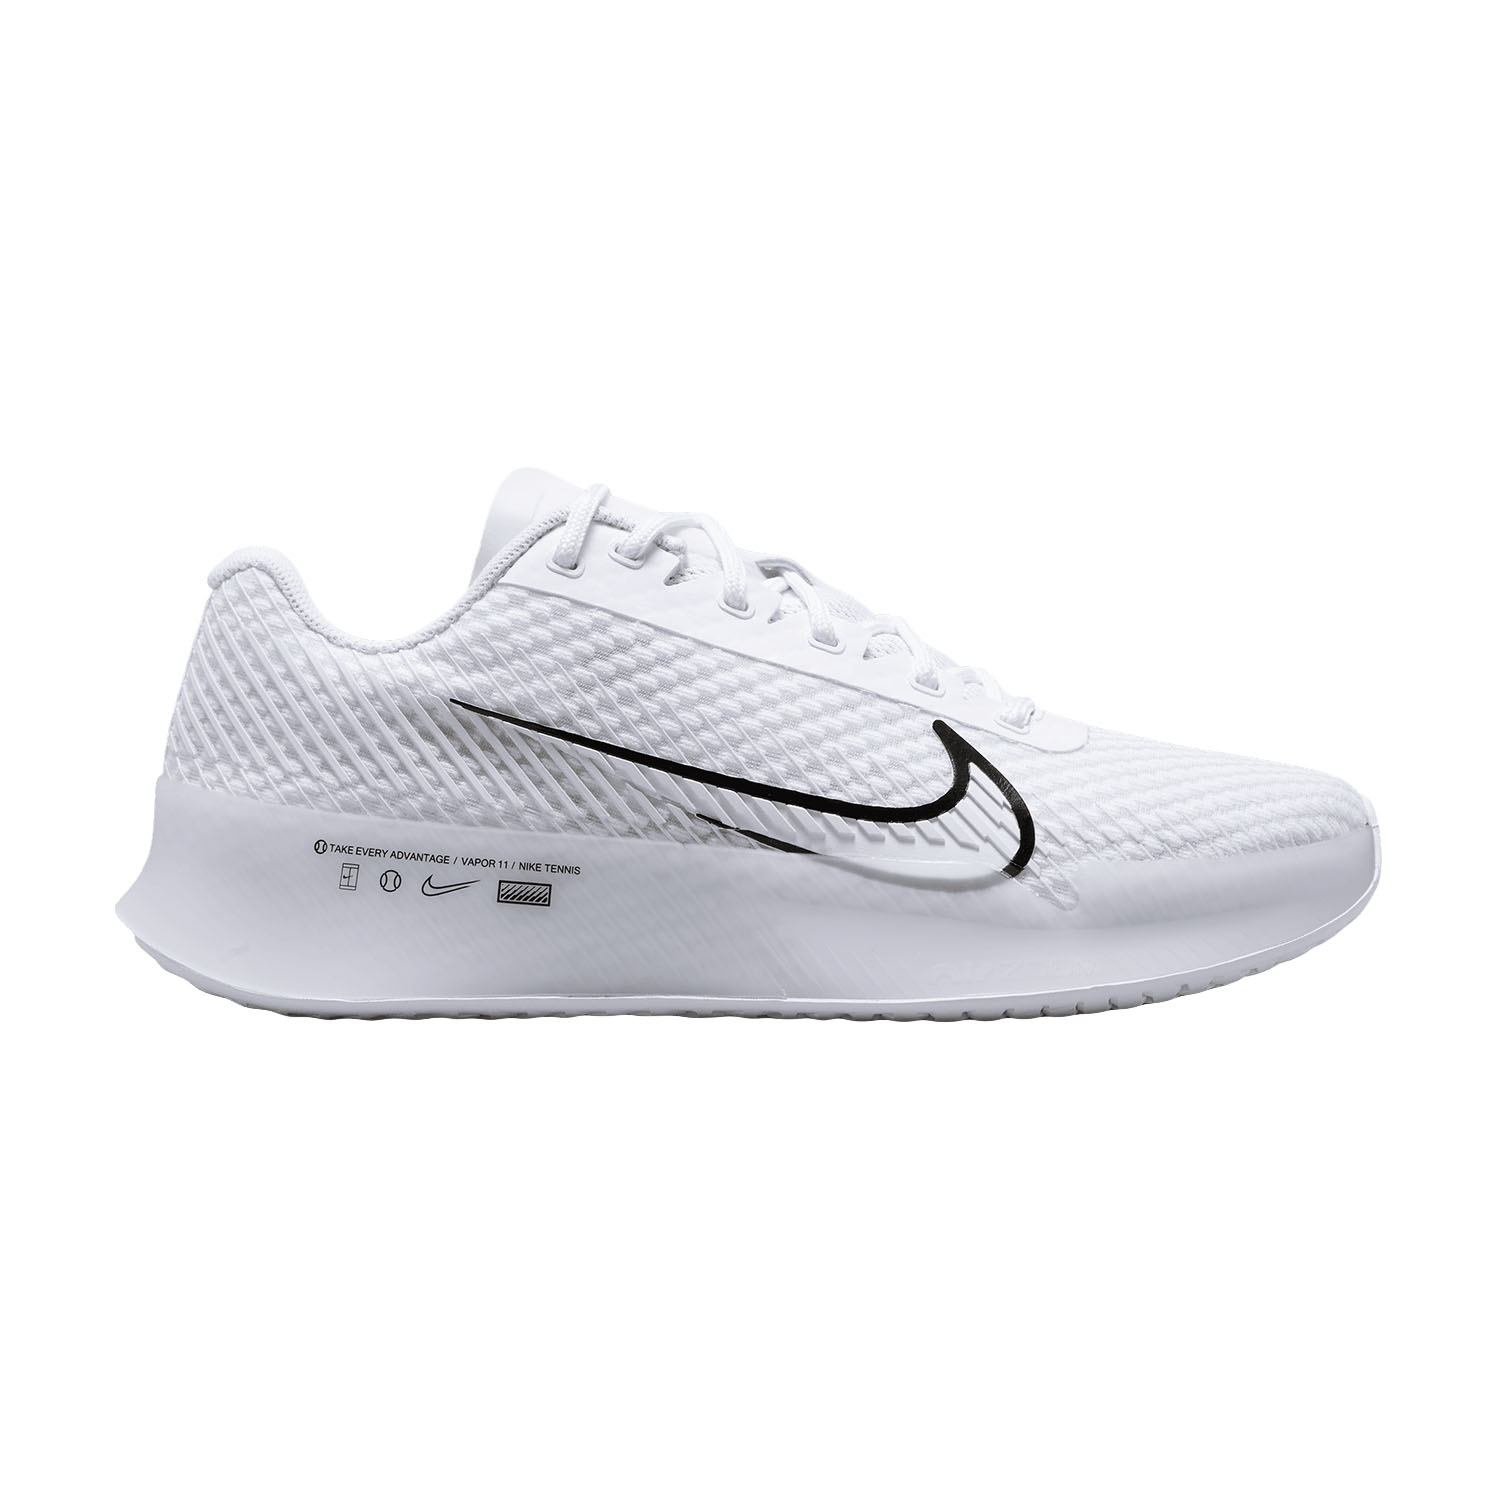 Articulación Berri Dar Nike Court Air Zoom Vapor 11 HC Women's Tennis Shoes - White